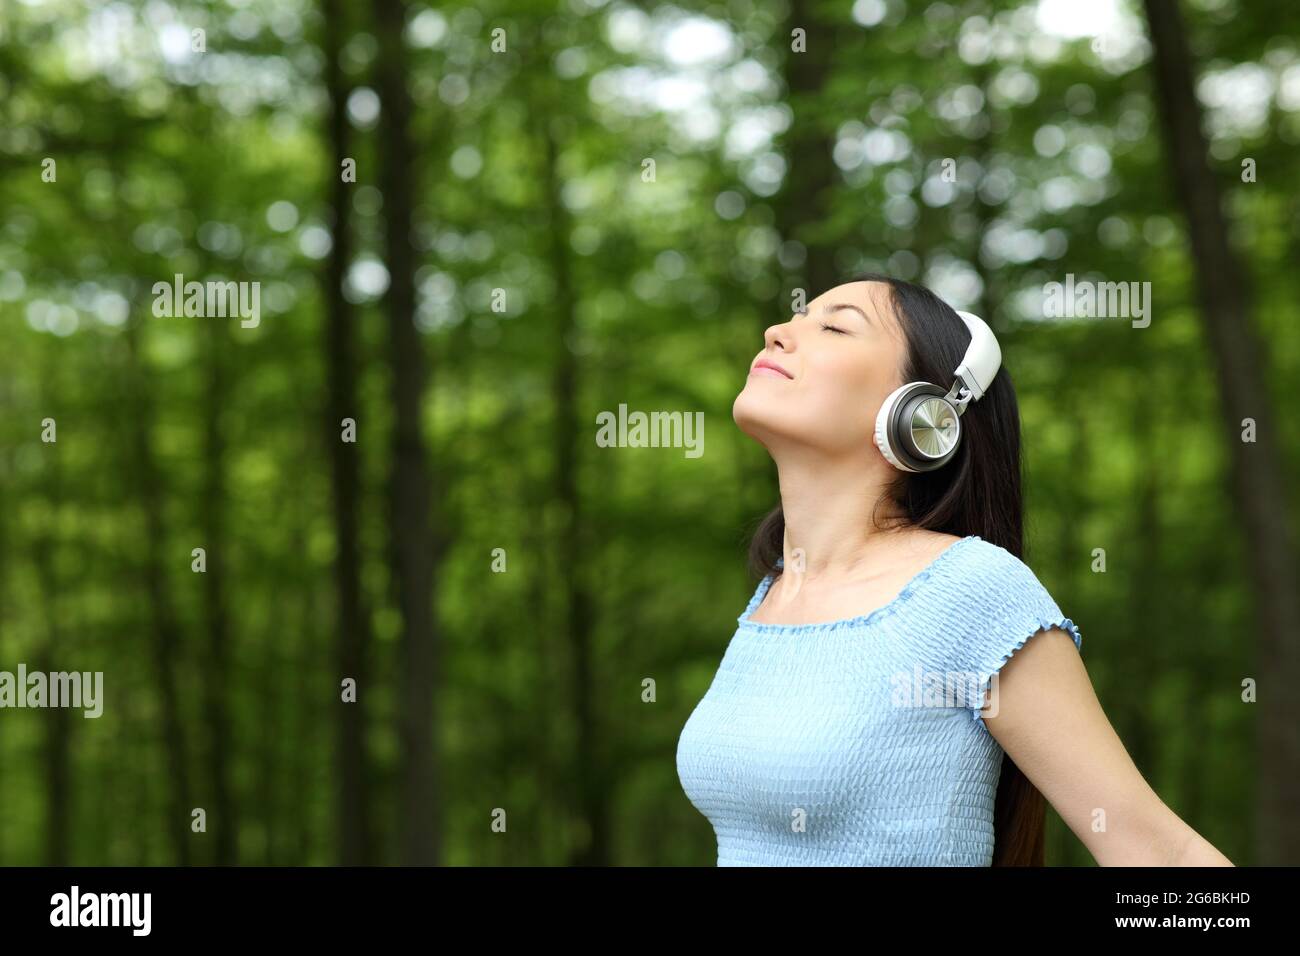 Femme asiatique qui écoute de la musique avec des écouteurs respirent de l'air frais dans une forêt Banque D'Images